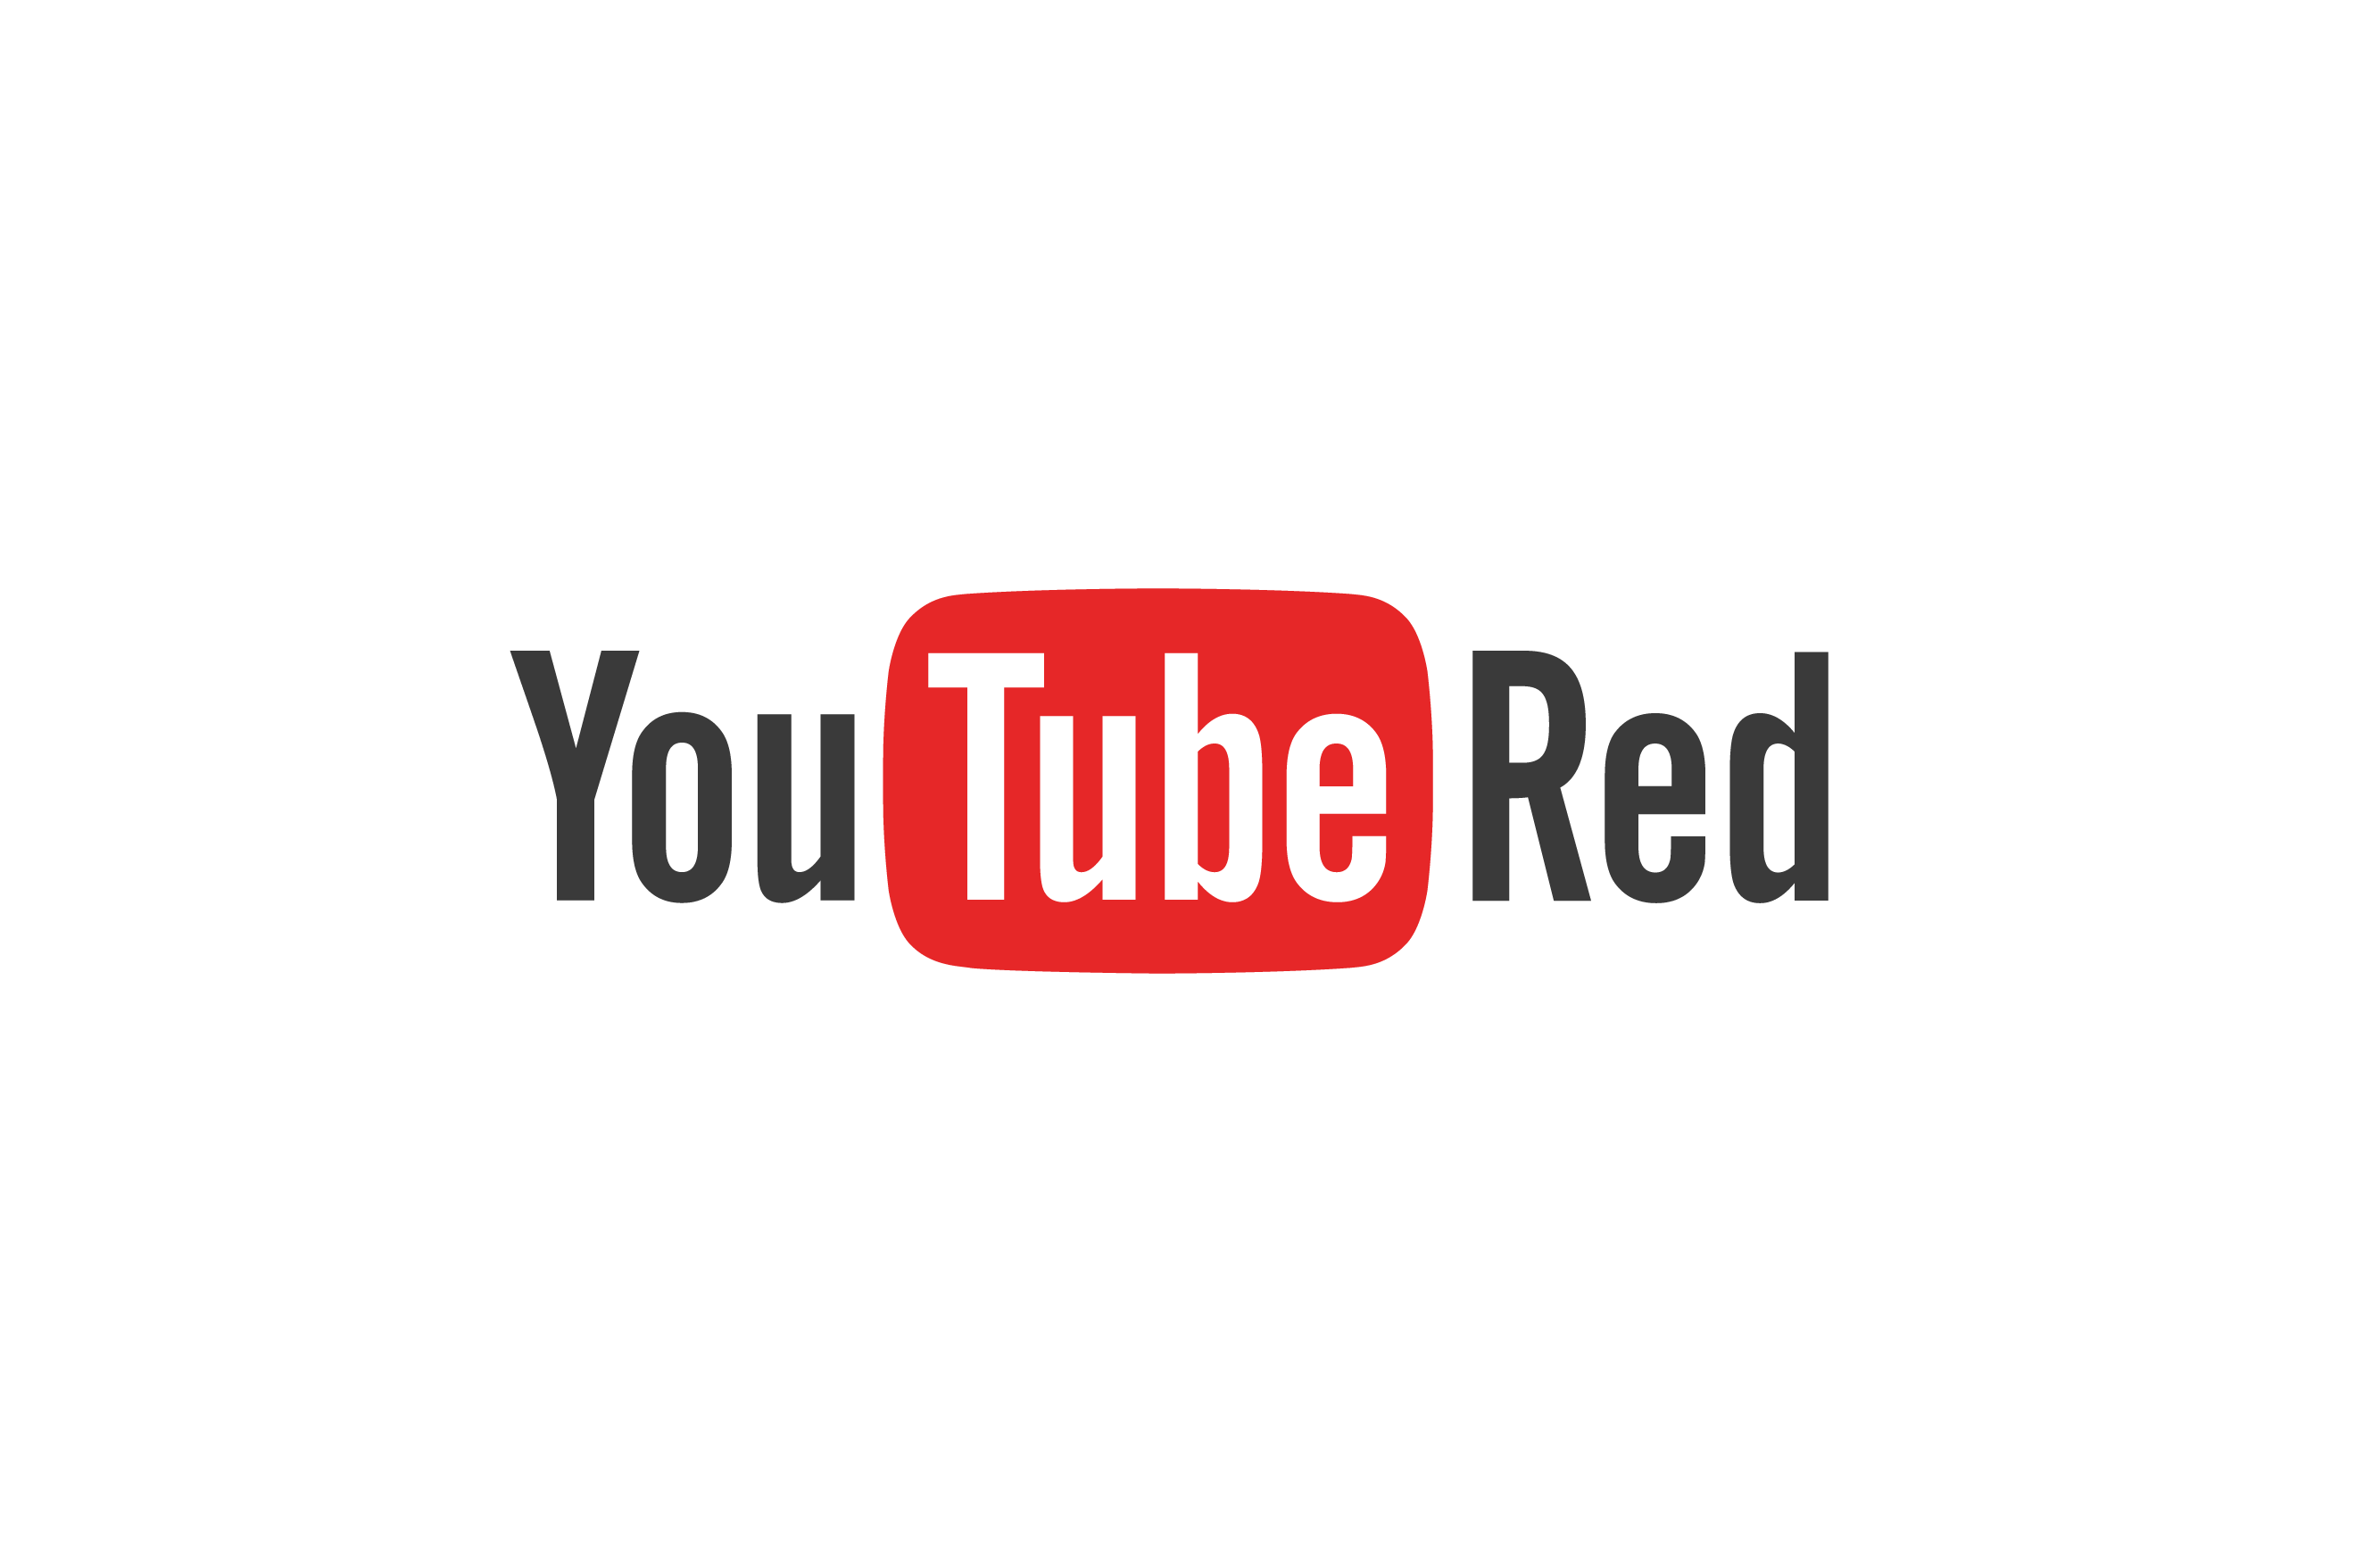 YouTube_Red_Brandmark